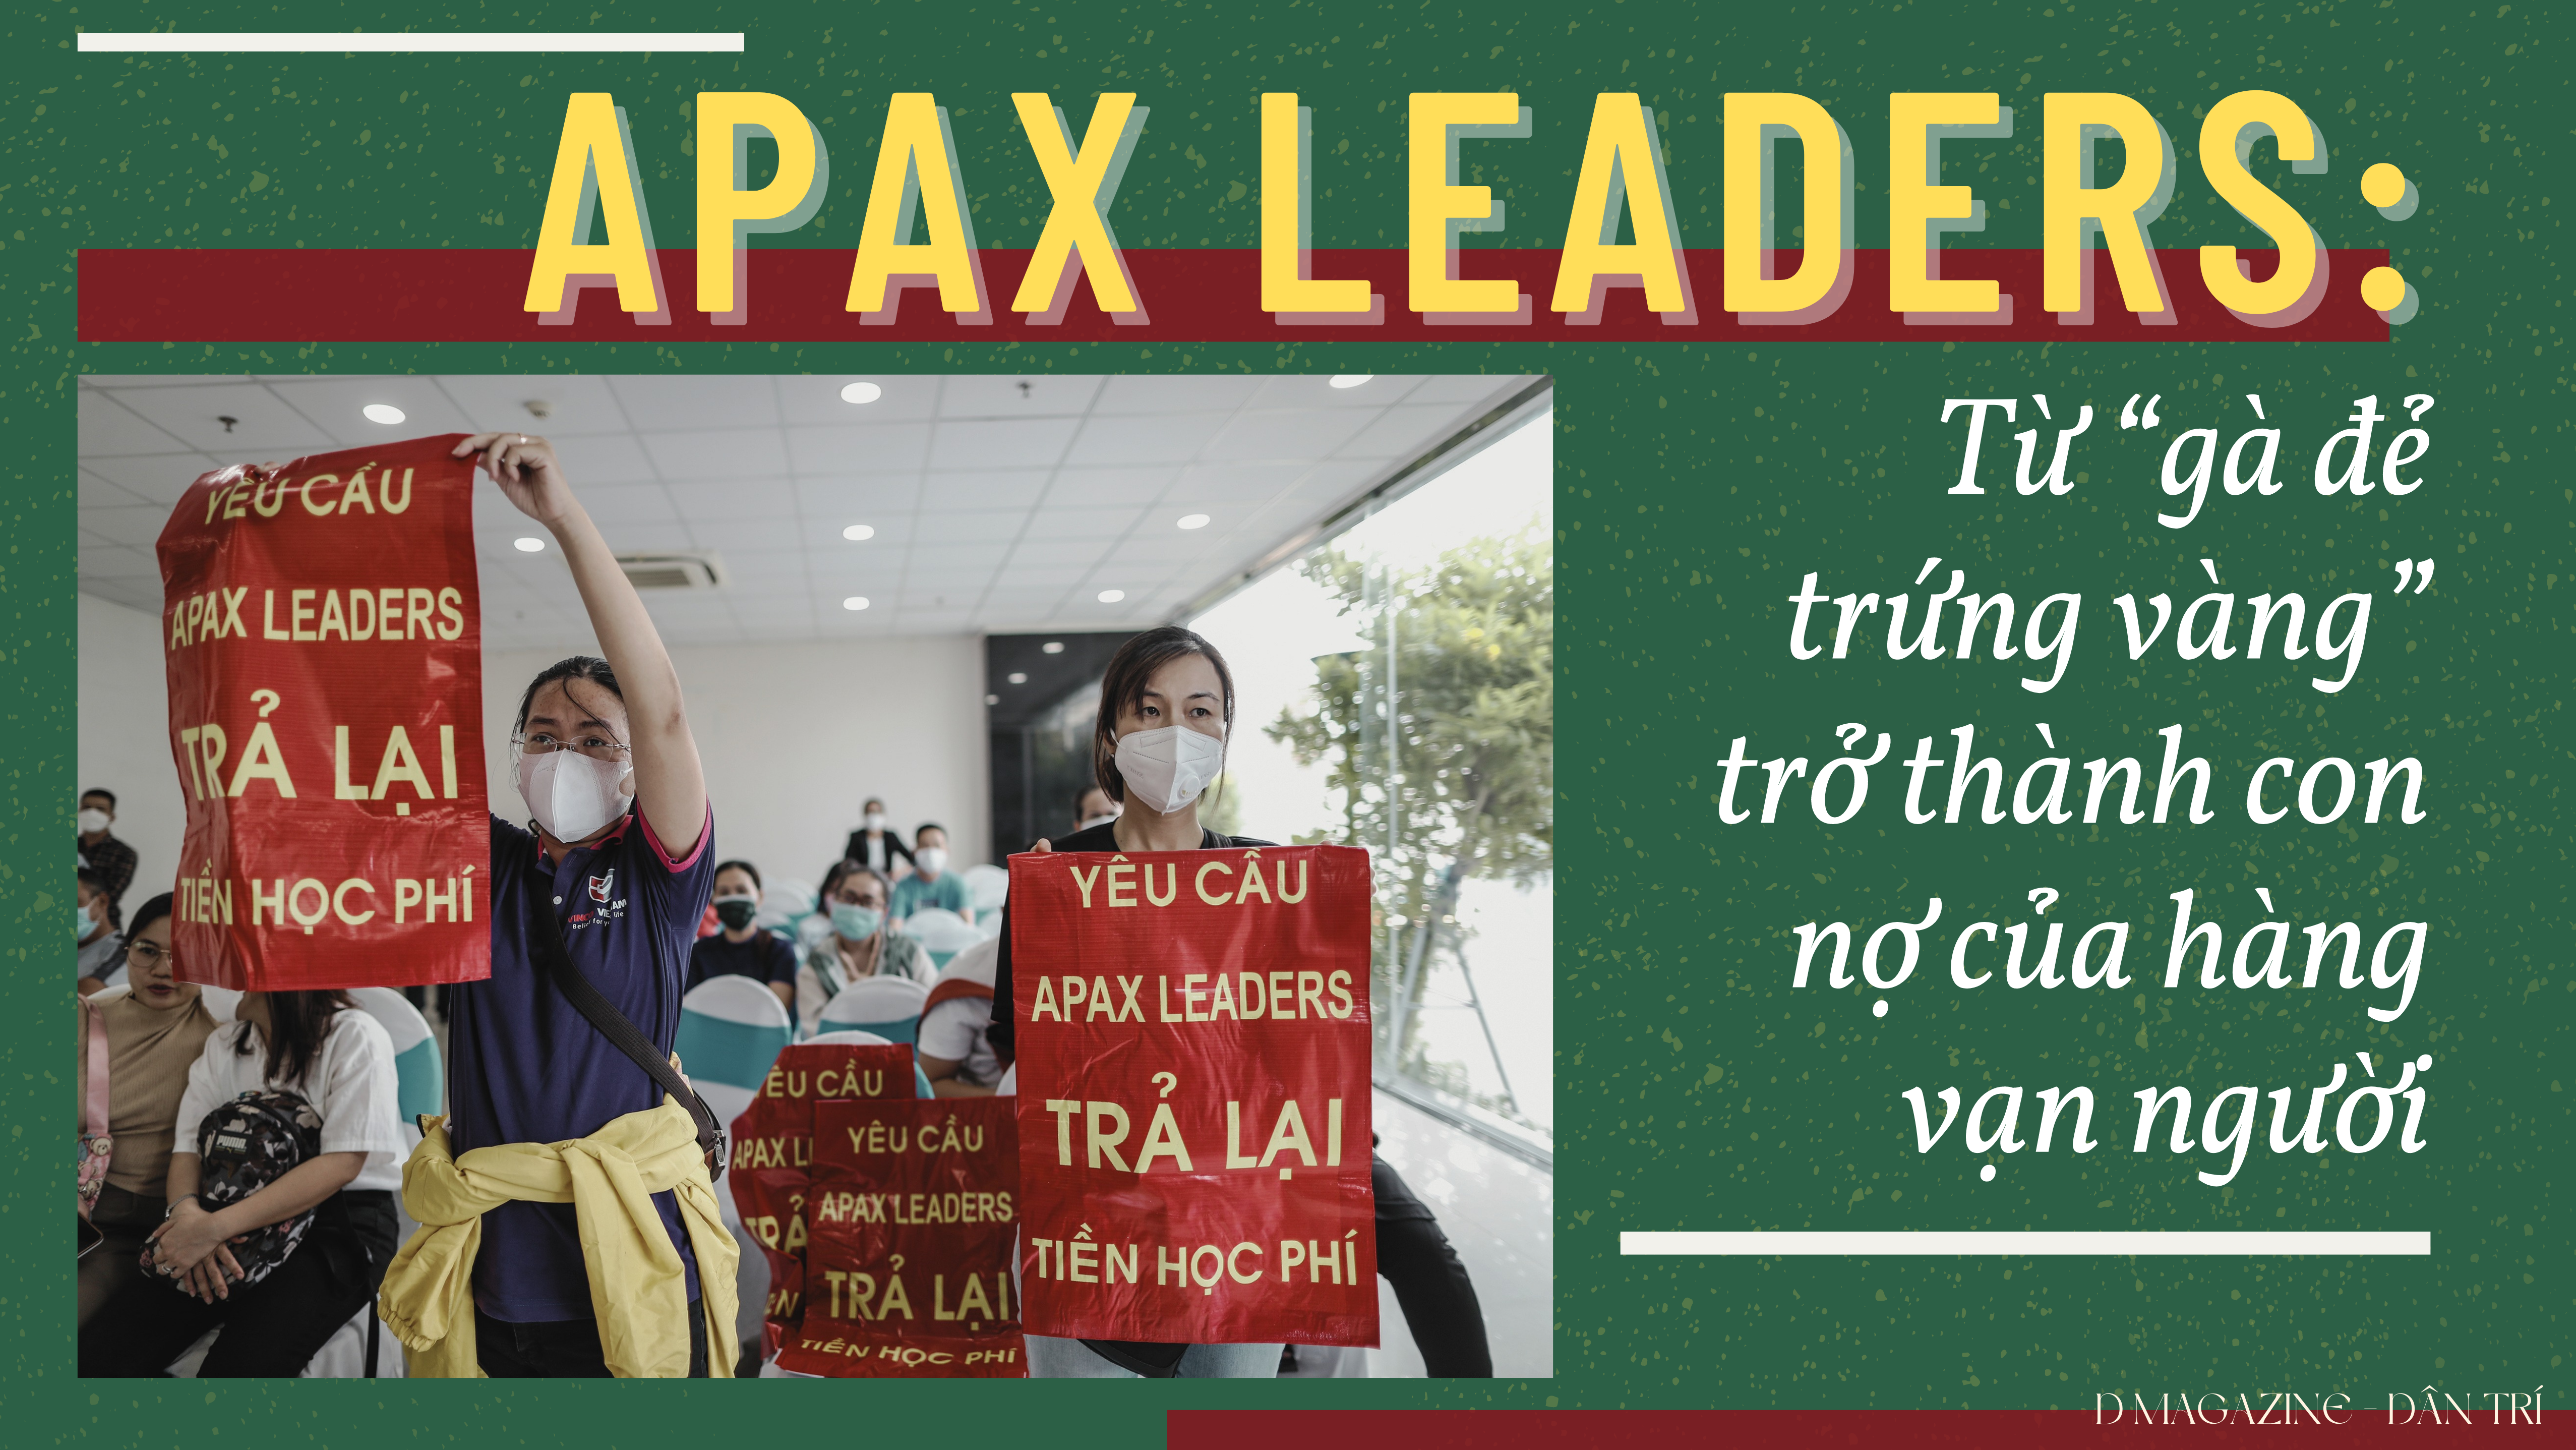 Apax Leaders: Từ "gà đẻ trứng vàng" trở thành con nợ của hàng vạn người